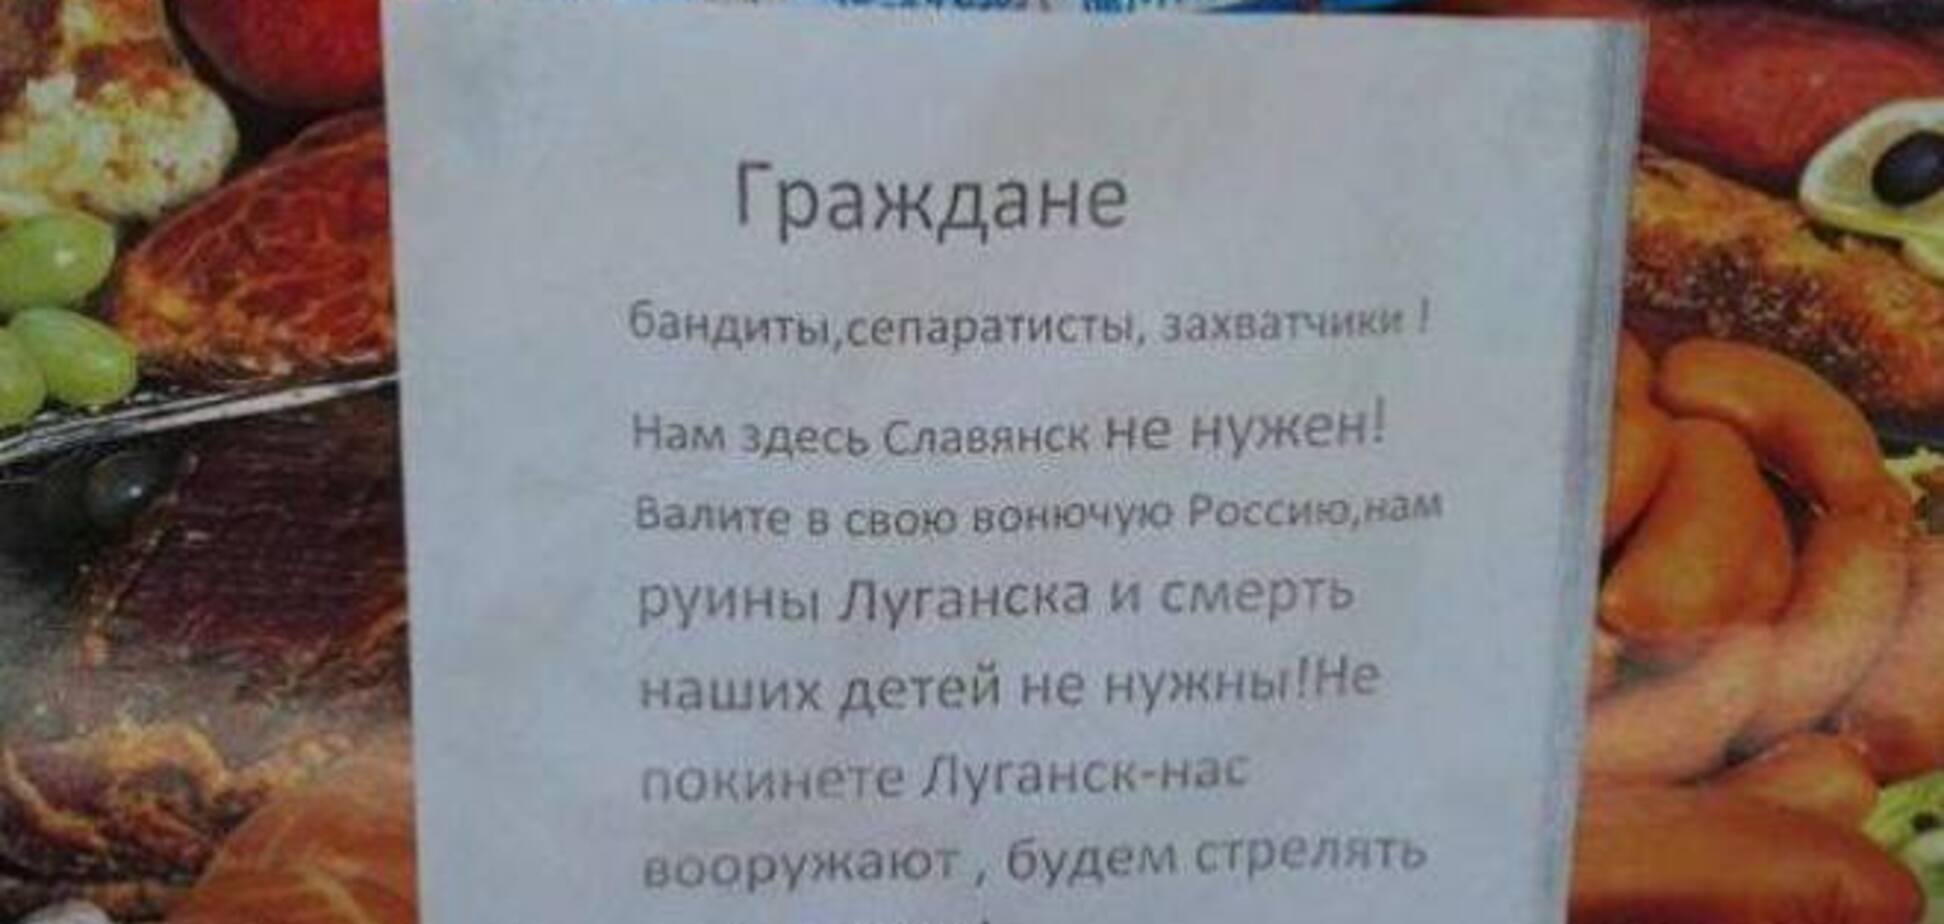 Луганчане – захватчикам: нам здесь Славянск не нужен!